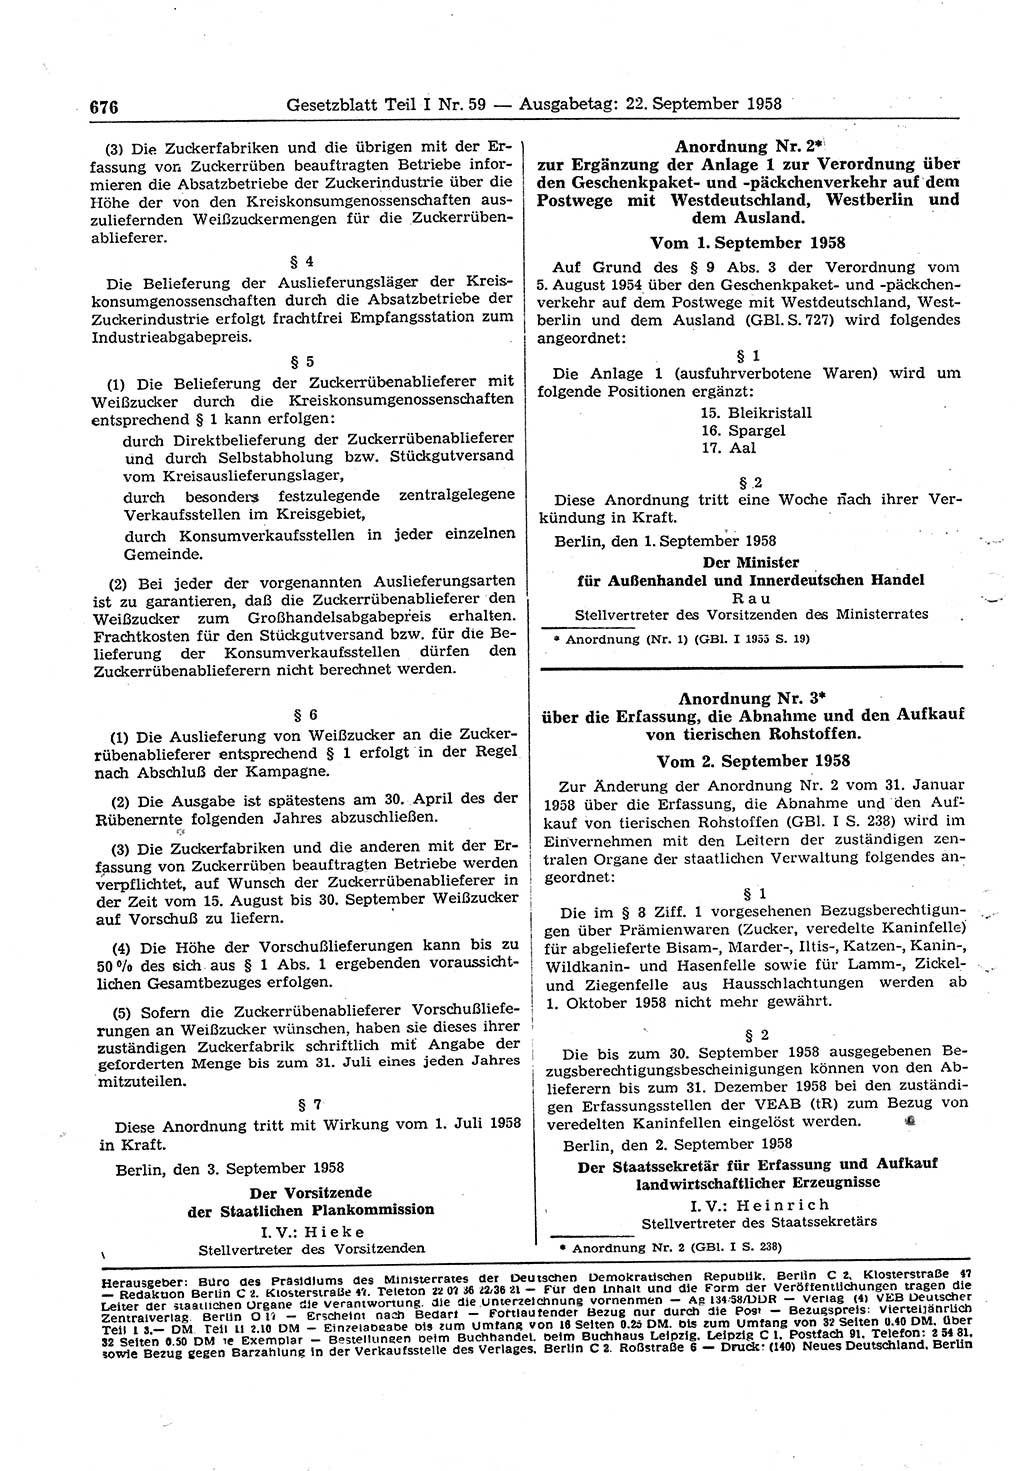 Gesetzblatt (GBl.) der Deutschen Demokratischen Republik (DDR) Teil Ⅰ 1958, Seite 676 (GBl. DDR Ⅰ 1958, S. 676)